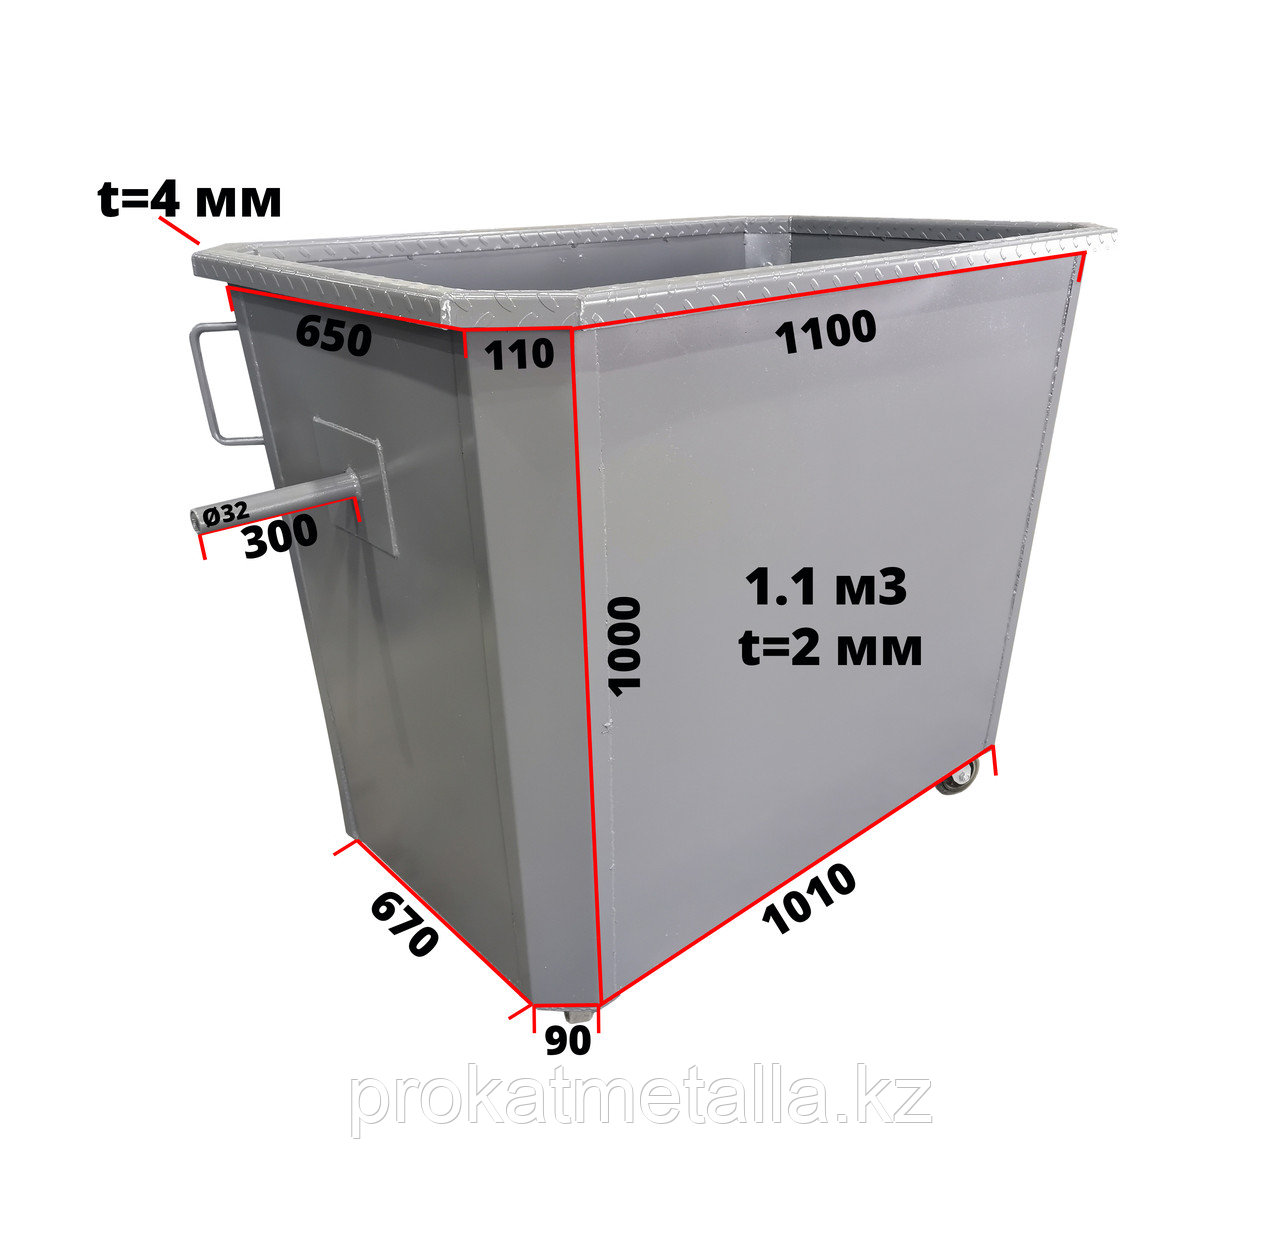  контейнер 1.1 м3 (толщина 2 мм): узнать цену и заказать в .